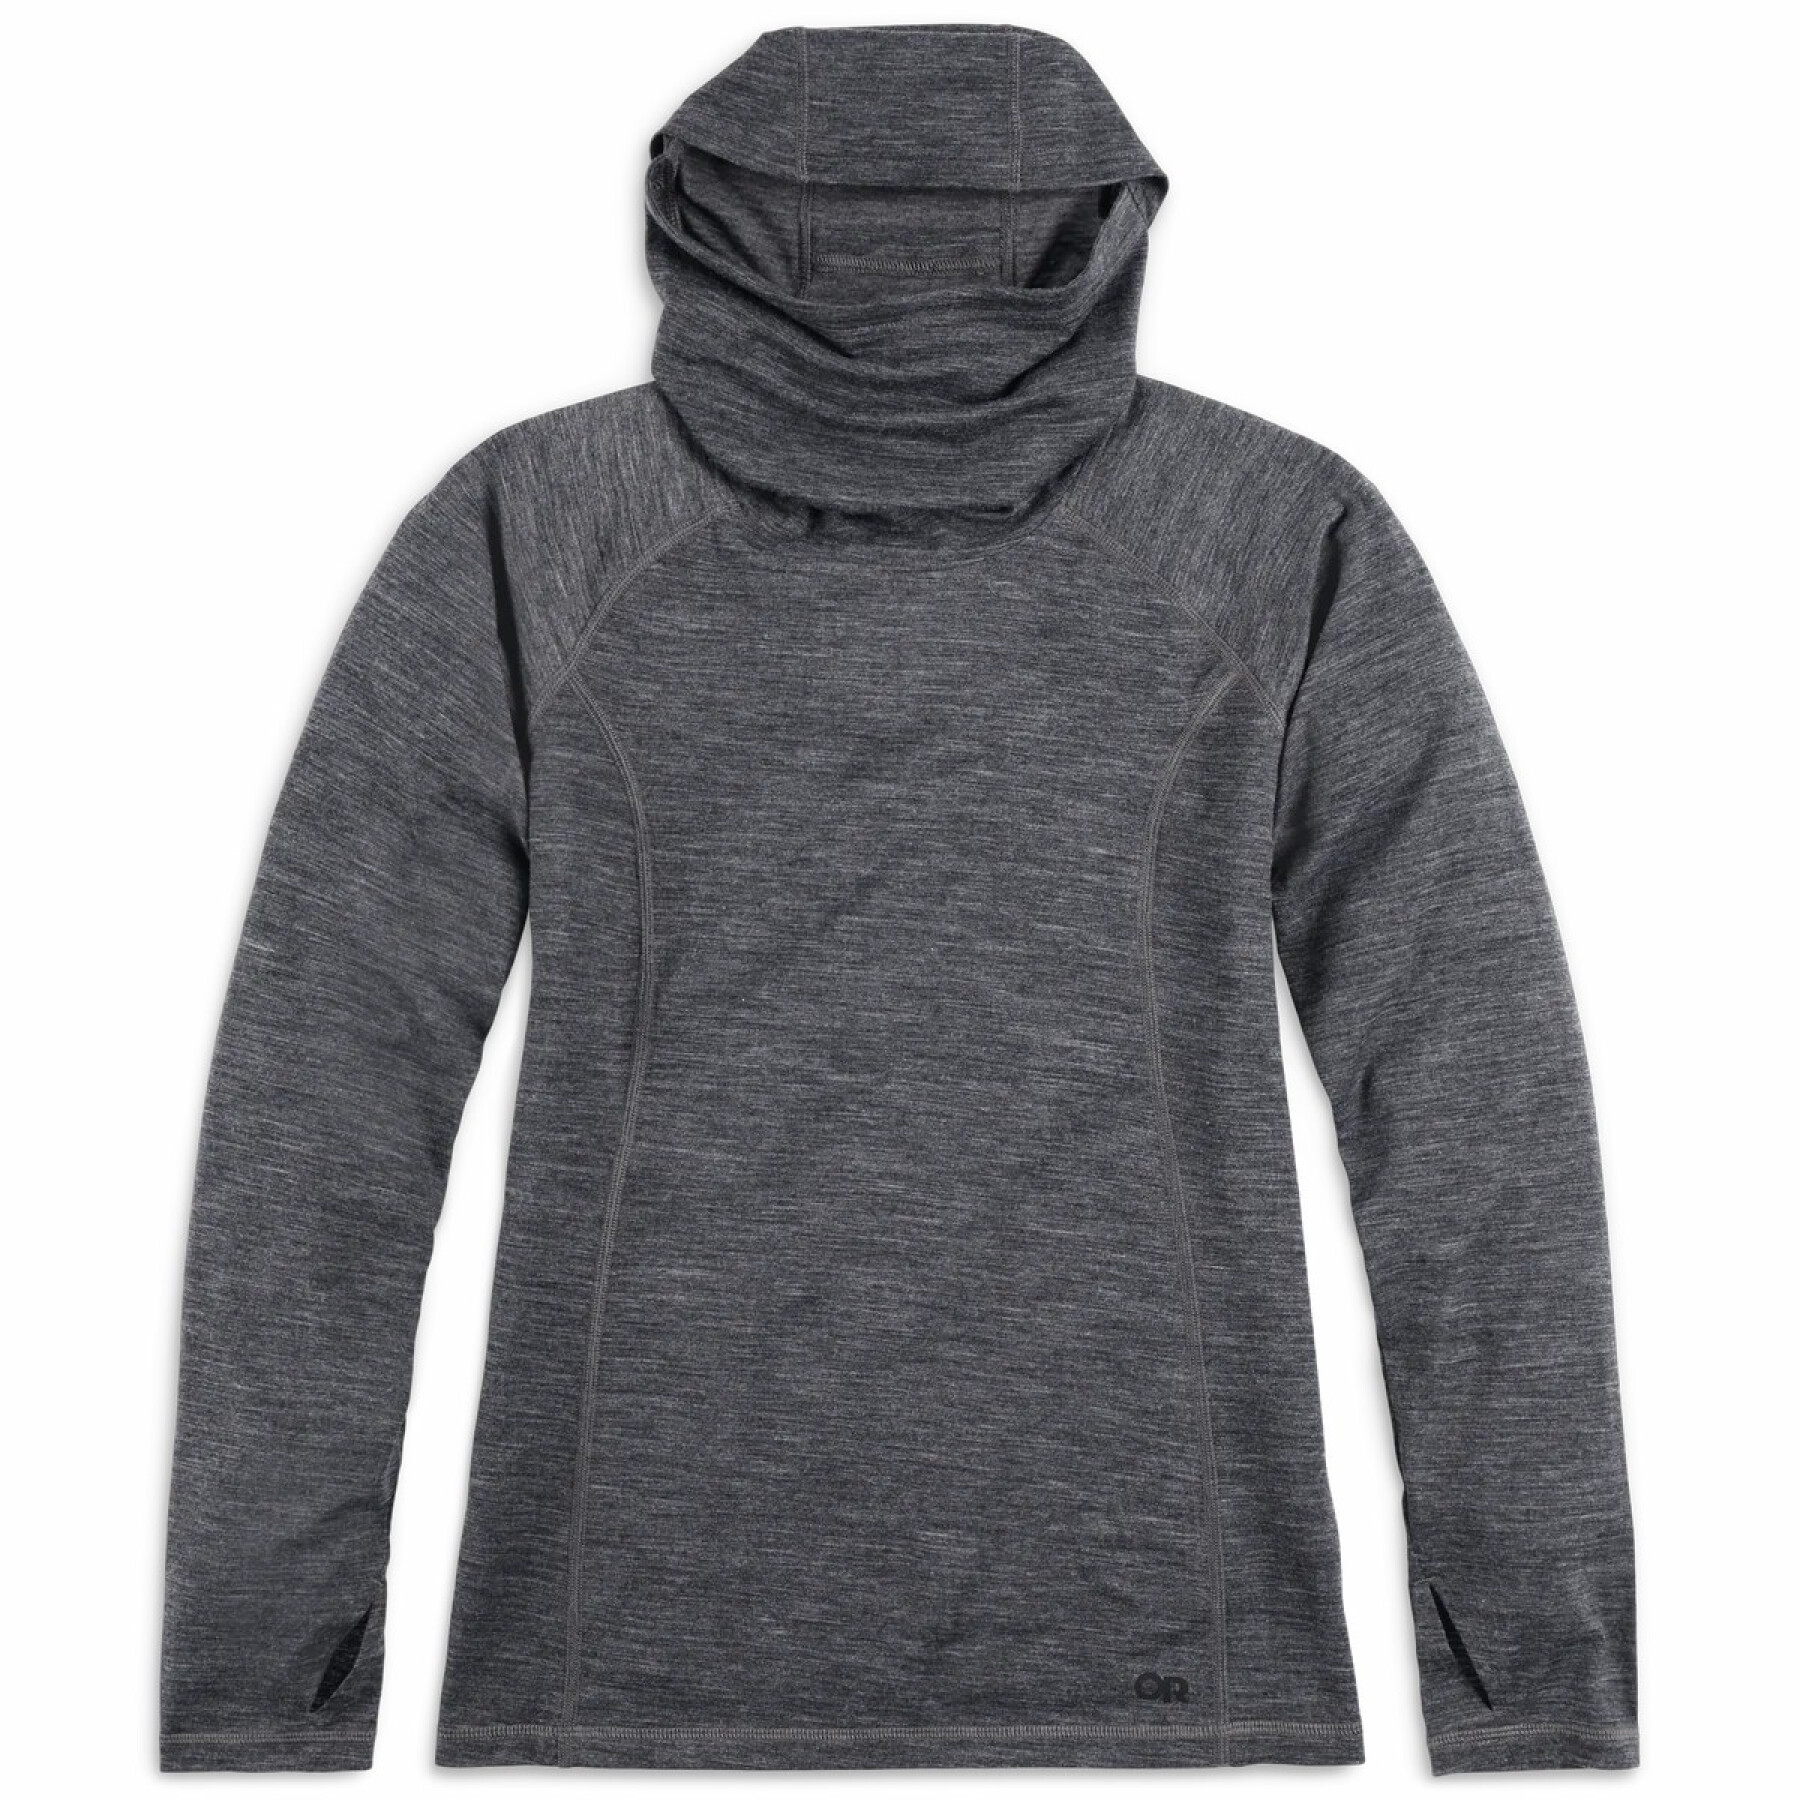 Women's hooded sweatshirt Outdoor Research Alpine Onset Merino 150